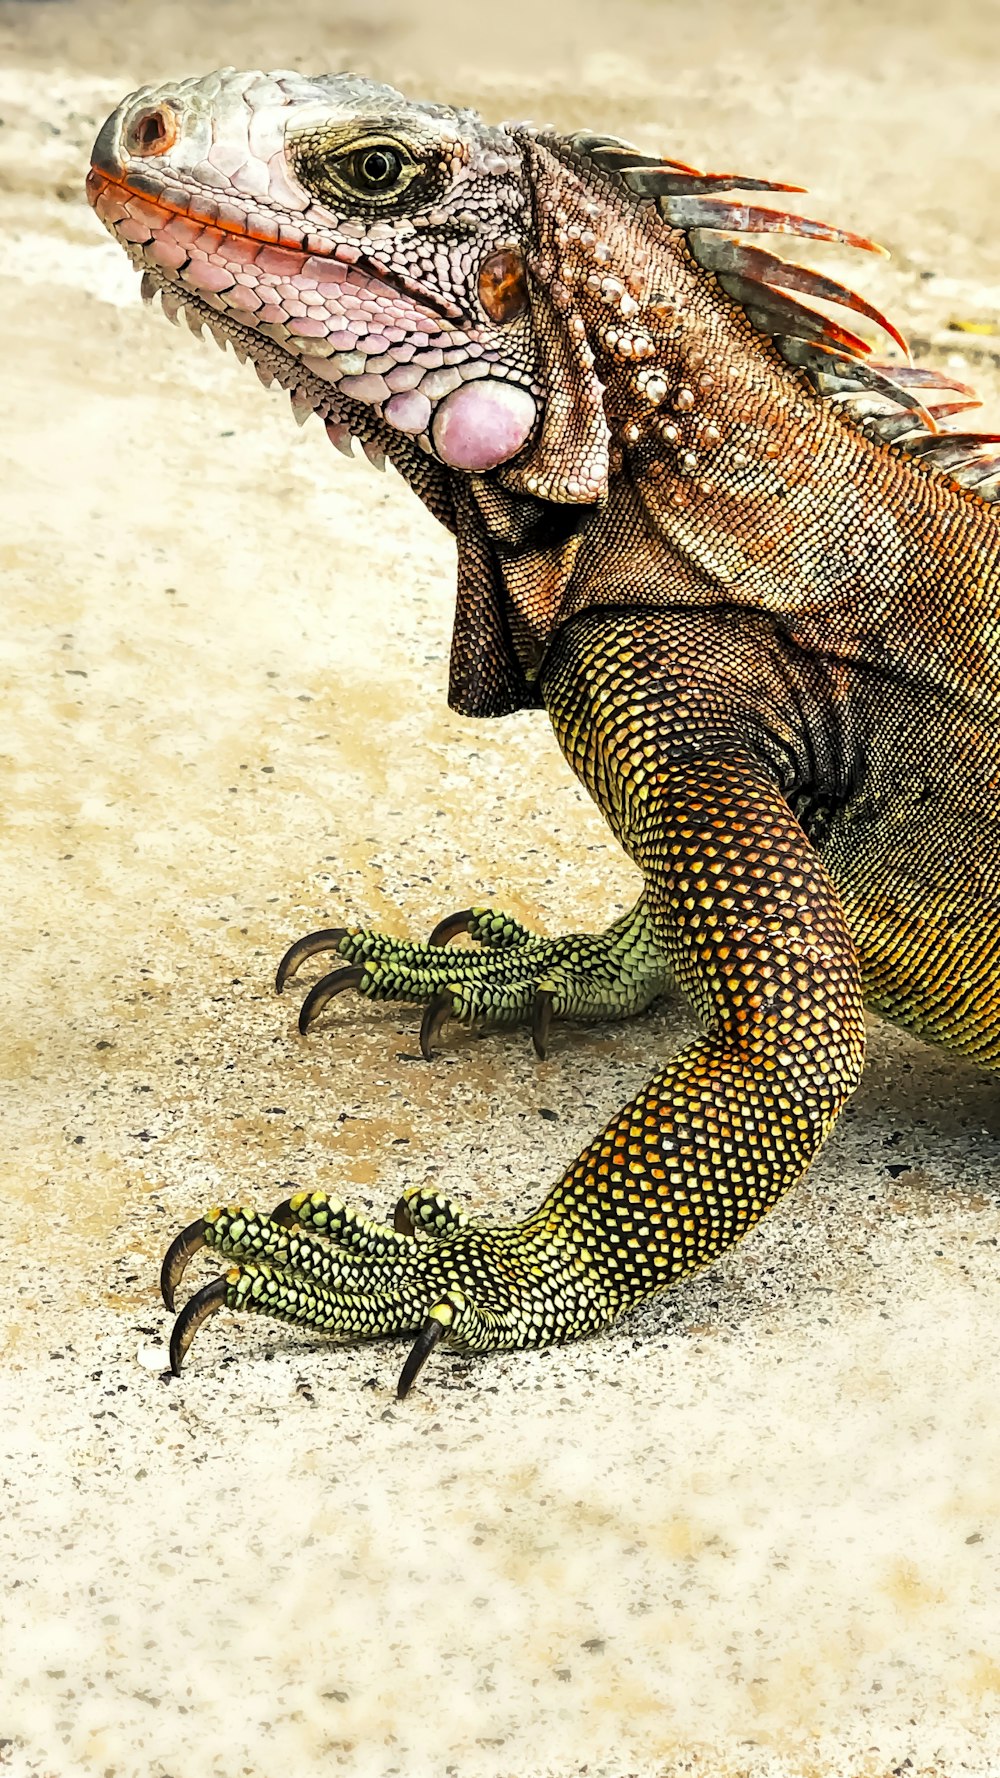 reptile vert et noir sur sable blanc